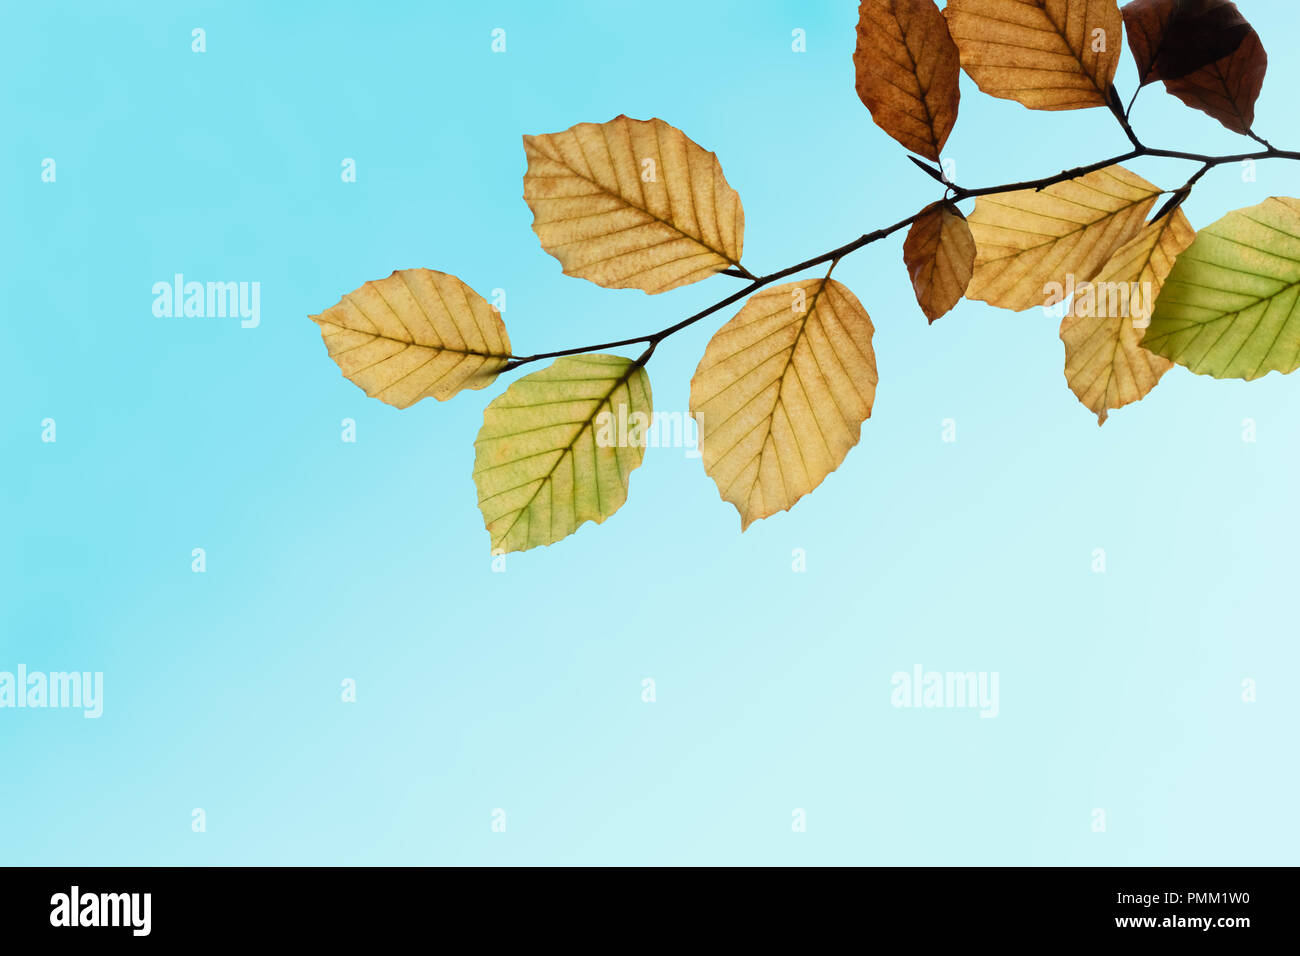 Herbst (Herbst) Blätter auf einem Ast in Grün Gold und Braun gegen türkis blauen Himmel. Stockfoto